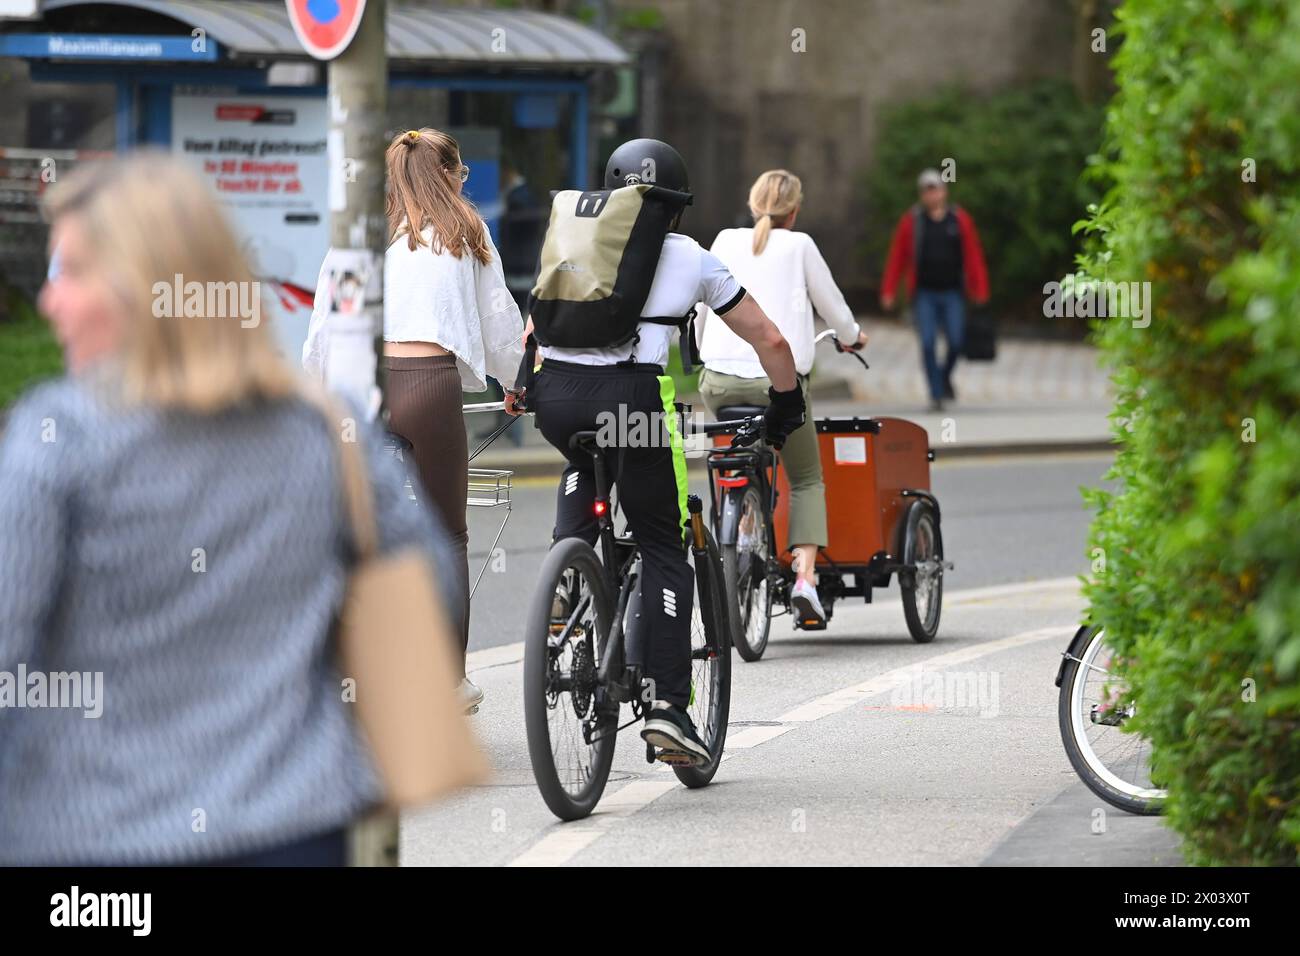 Radfahrer fahren mit ihren Raedern,Fahrraedern auf einem Radweg in Muenchen im Stadtverkehr,Rad fahren. Lastenrad. *** Cyclists riding their bikes, bicycles on a bike path in Munich in city traffic, cyclists riding cargo bikes Stock Photo